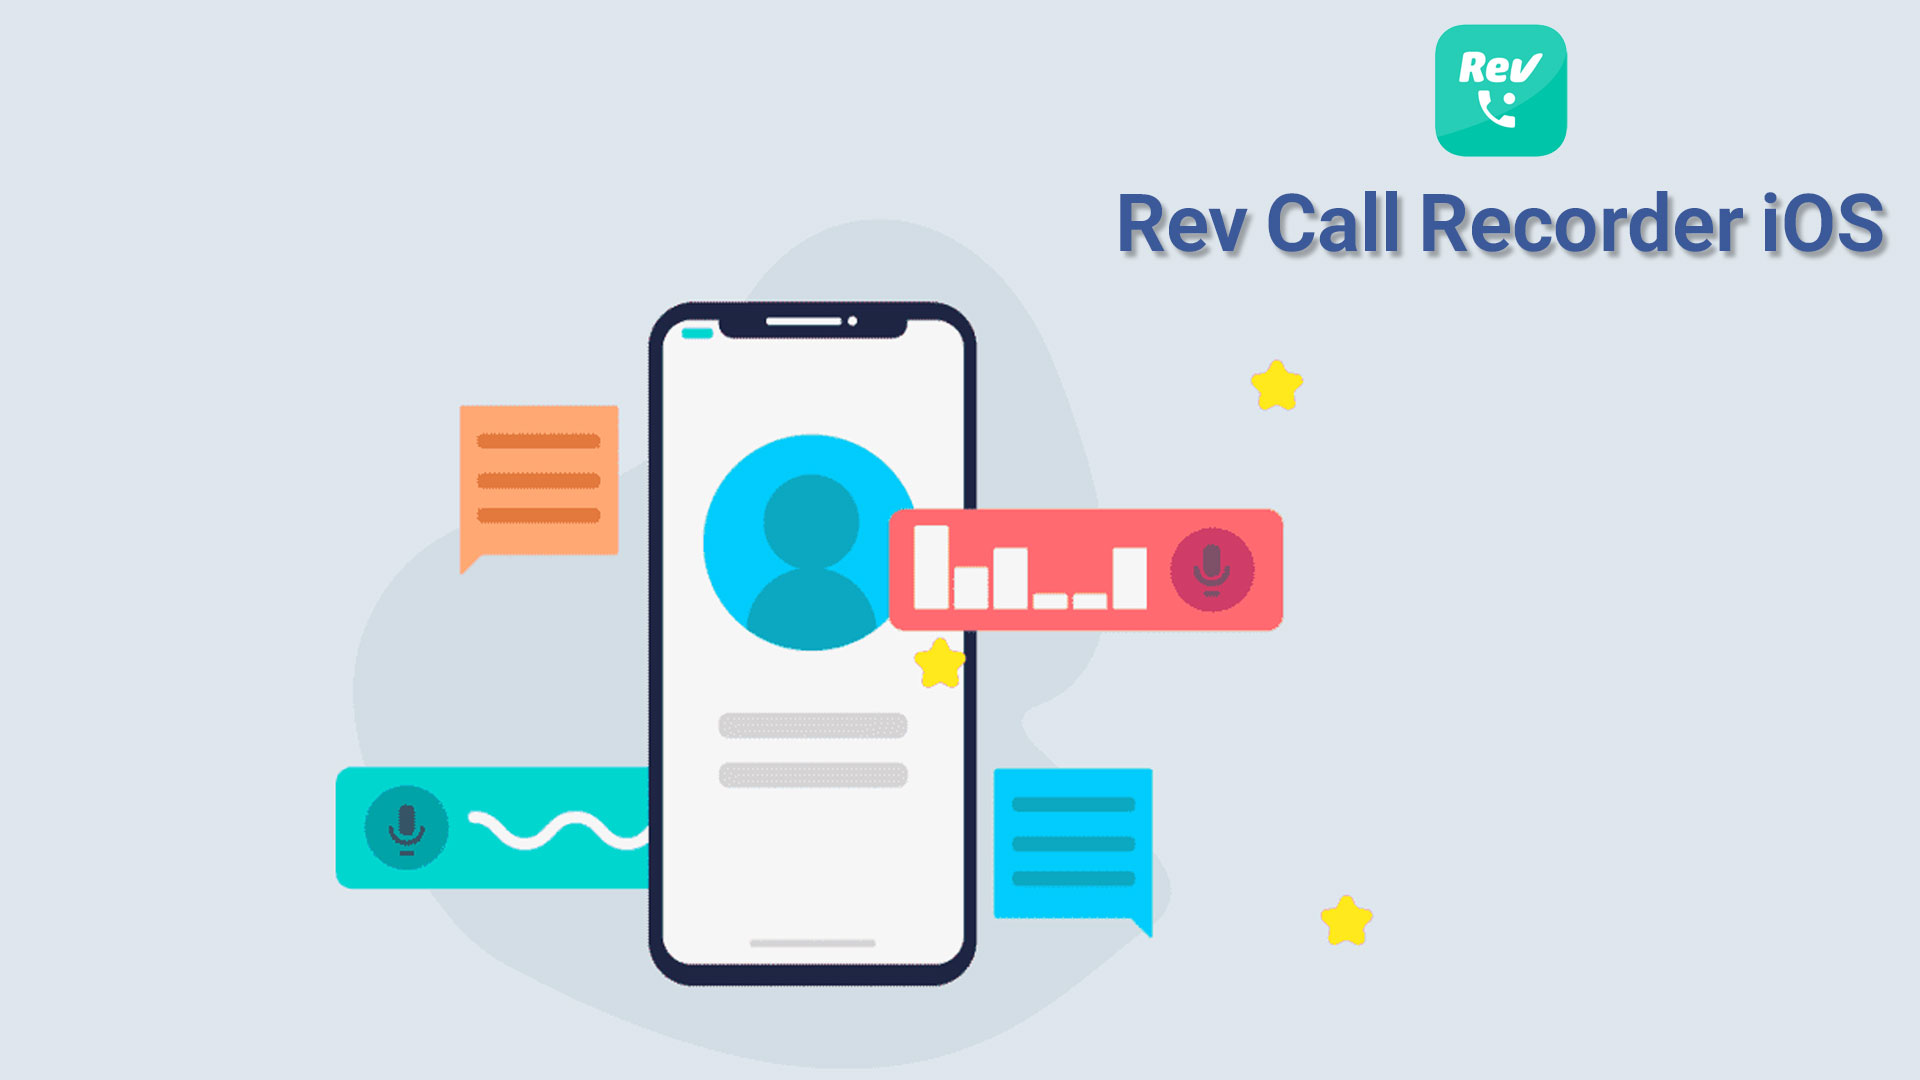 ضبط تماس با rev call recorder